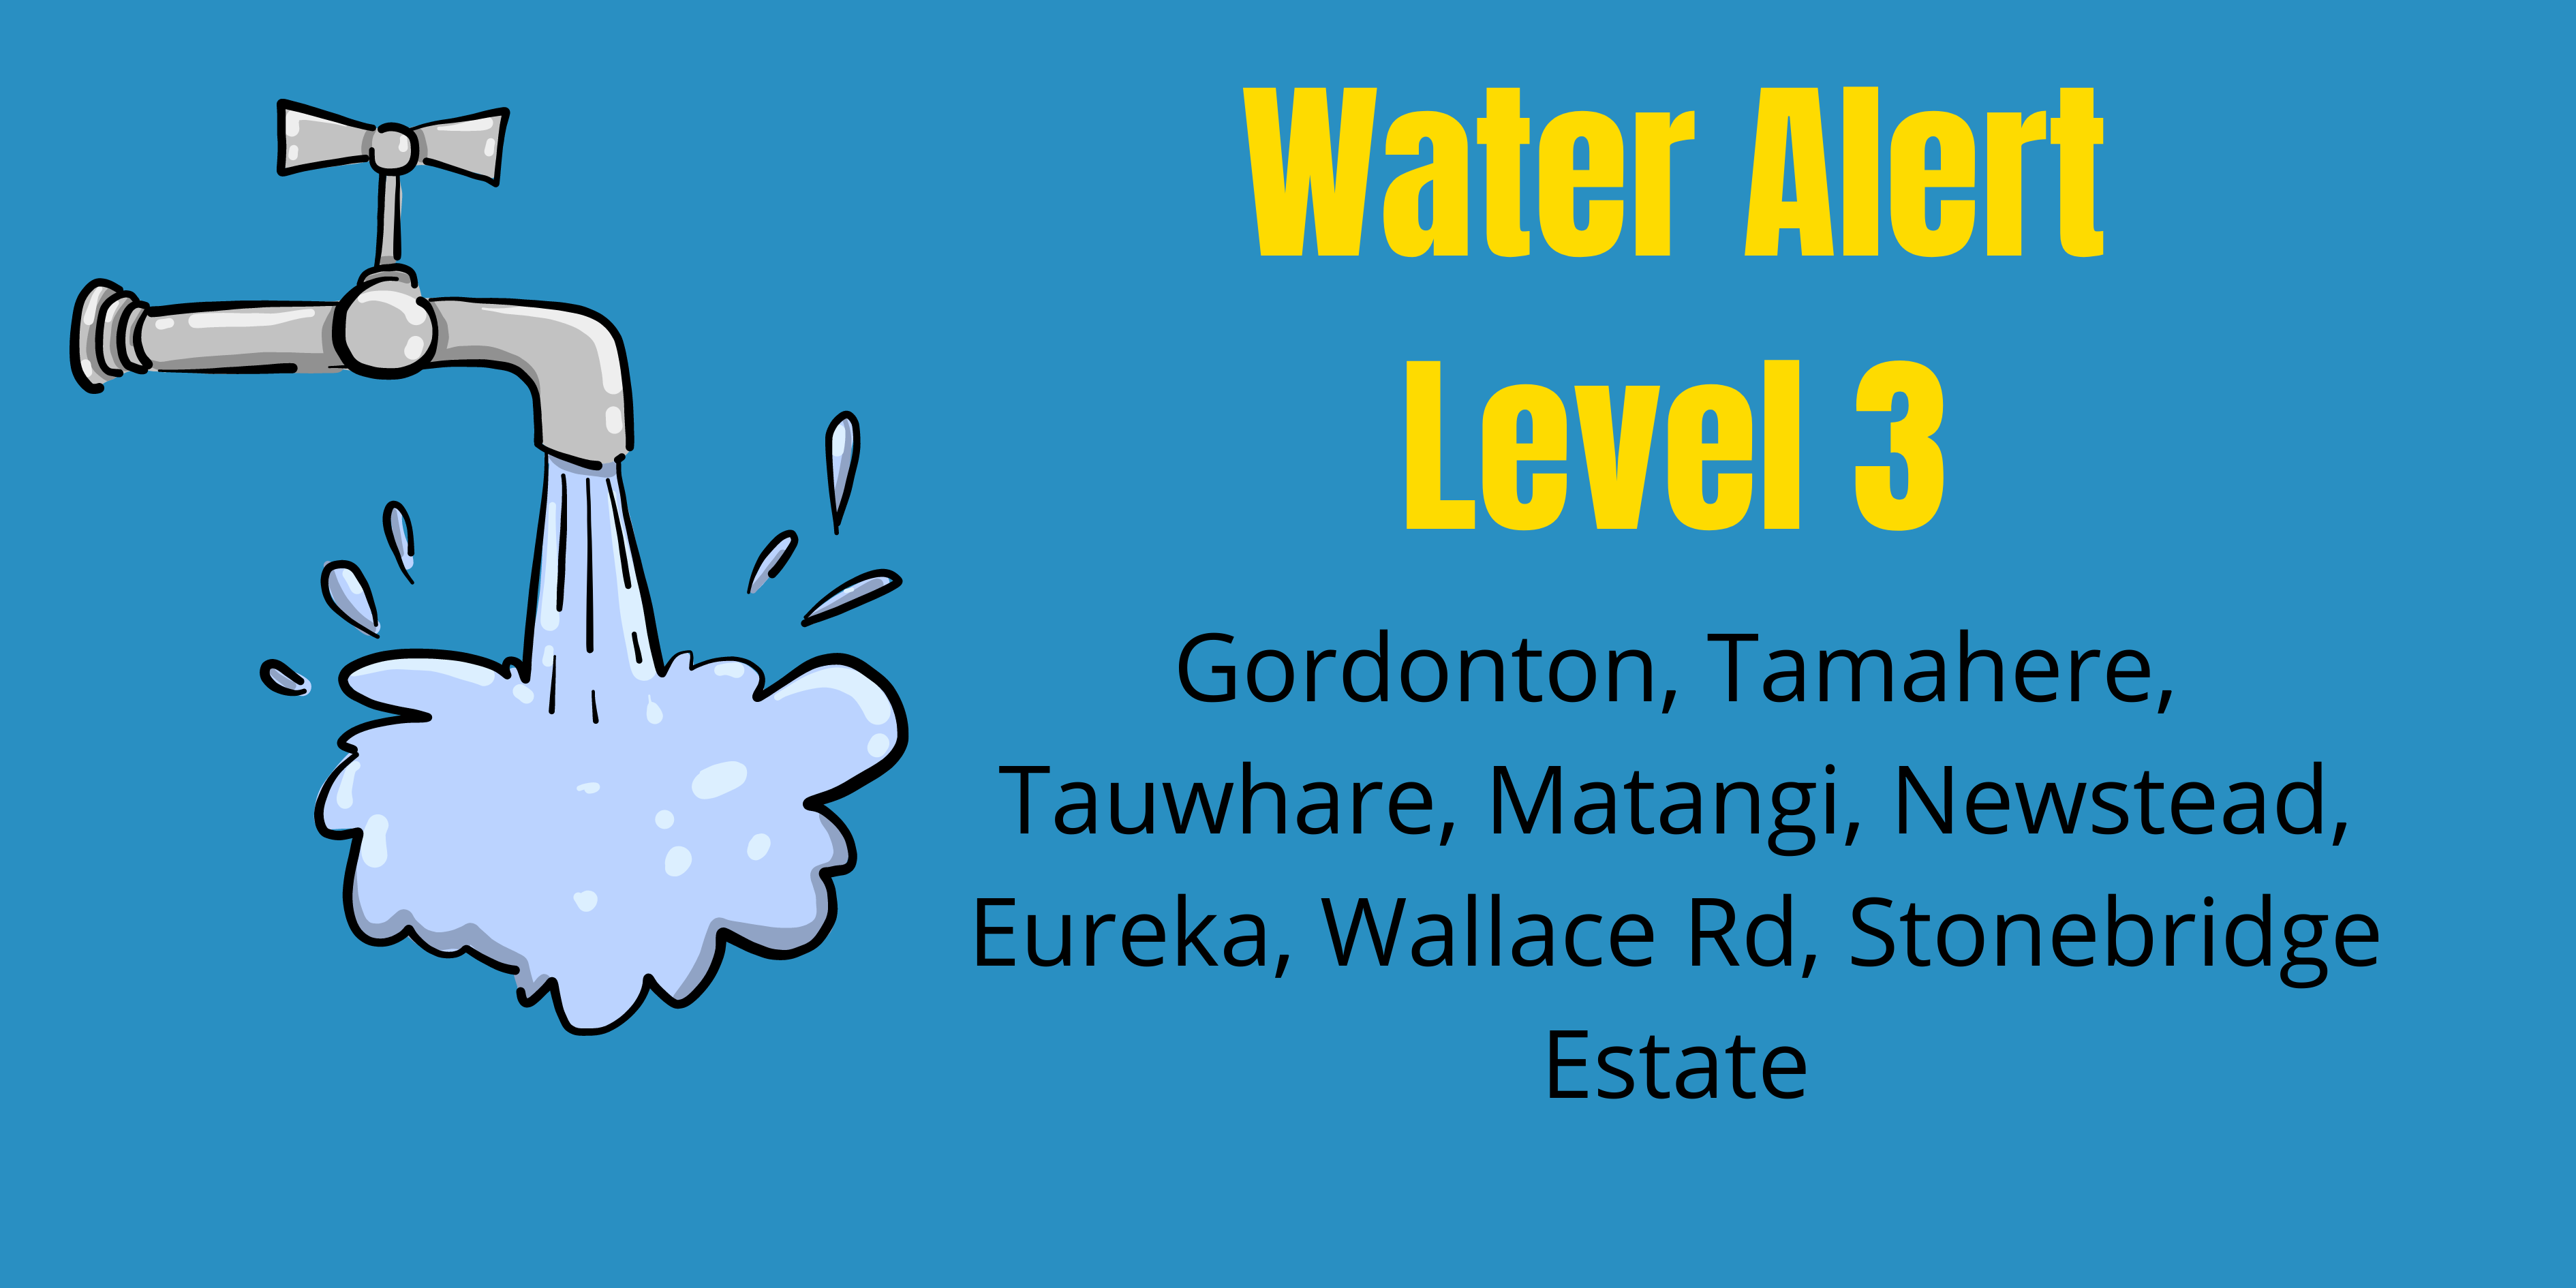 Water alert level 3 across WDC area